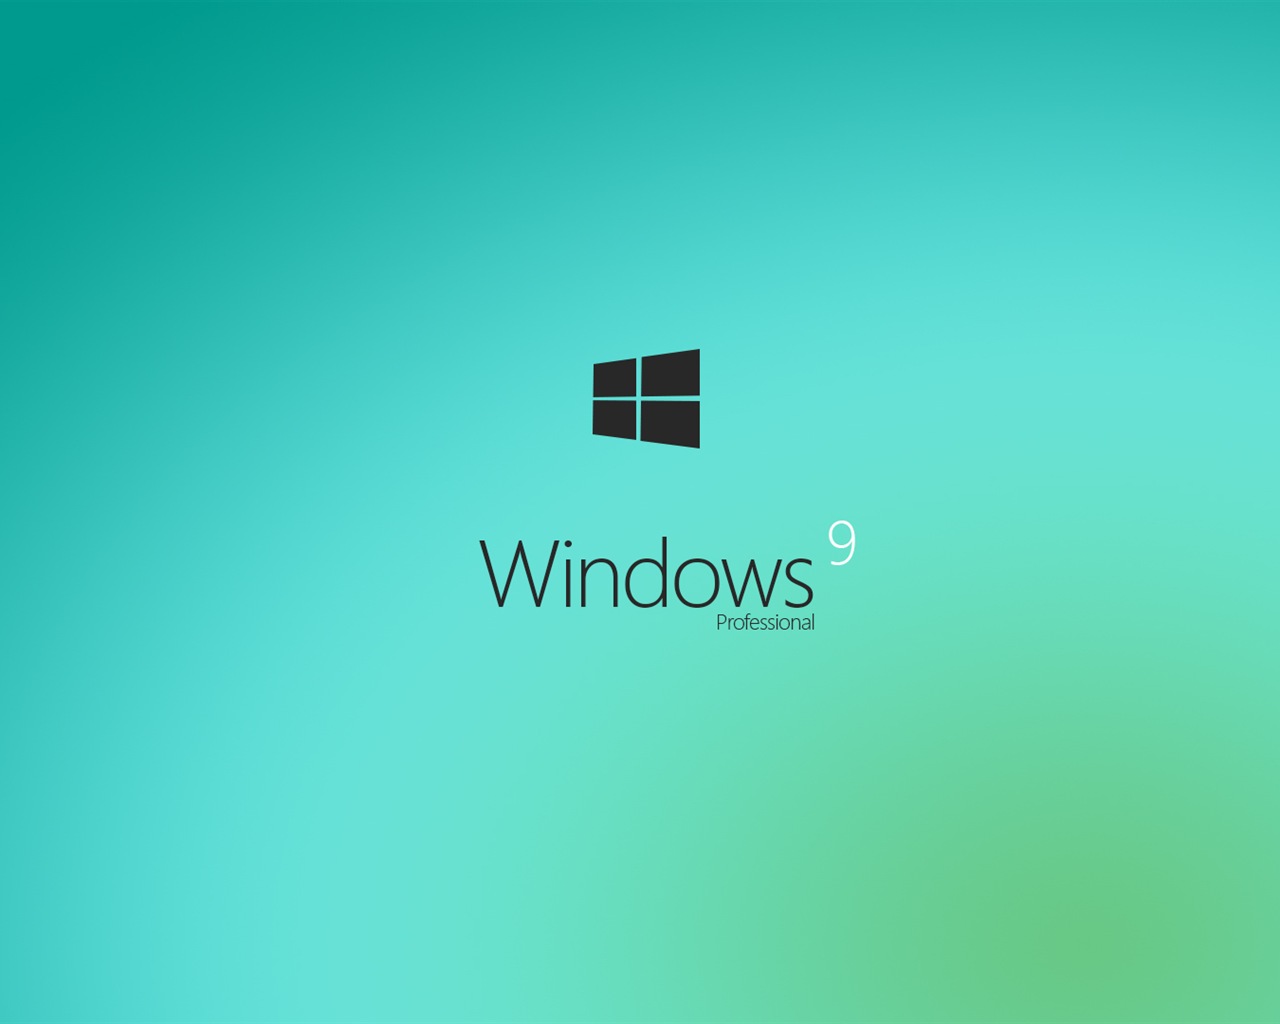 Microsoft Windowsの9システムテーマのHD壁紙 #3 - 1280x1024